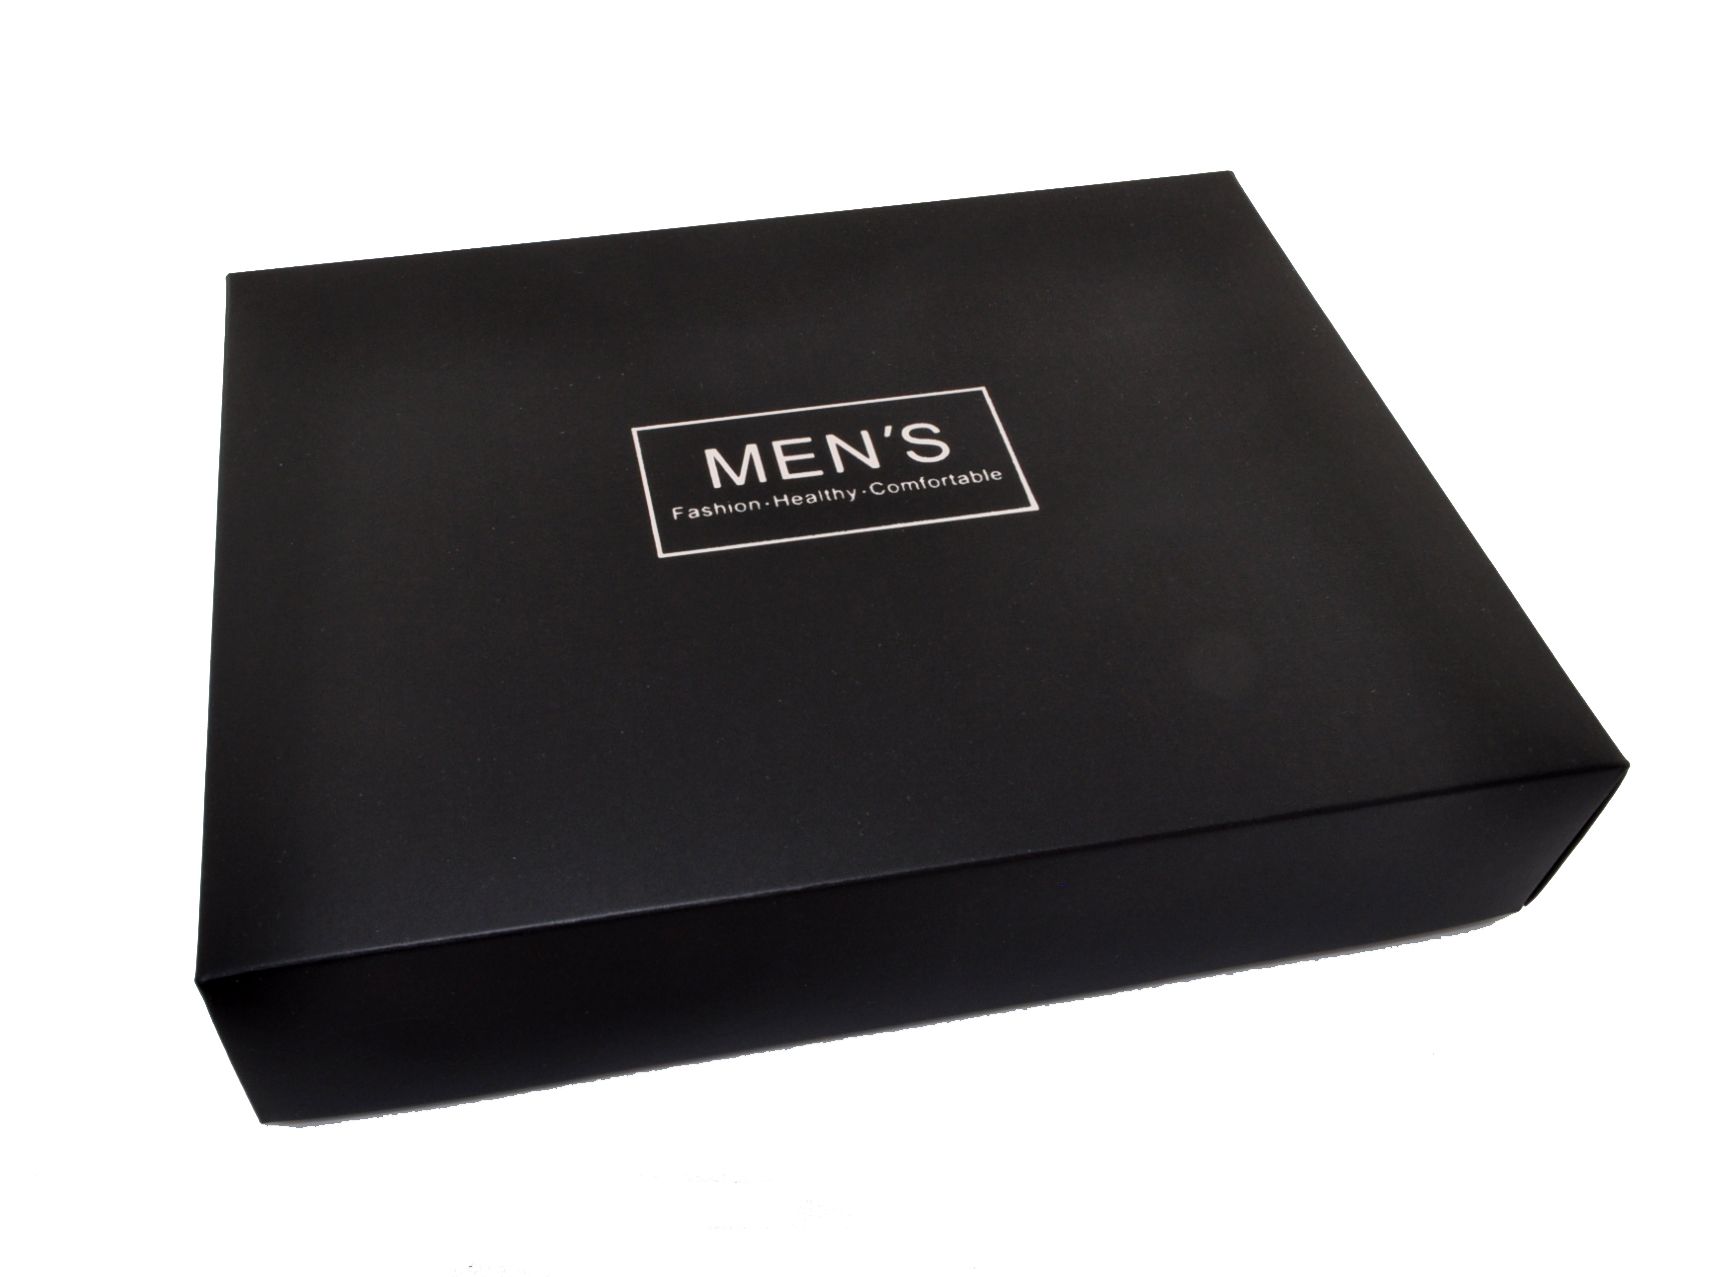 UP46 Коробка подарочная черная для мужчин описание: Состав - Картон, Цвет - Черный, Размеры - ШхВхТ: 19,5 см х 14,5 см х 4 см, Вес - , Стоимость - 200 руб руб.;